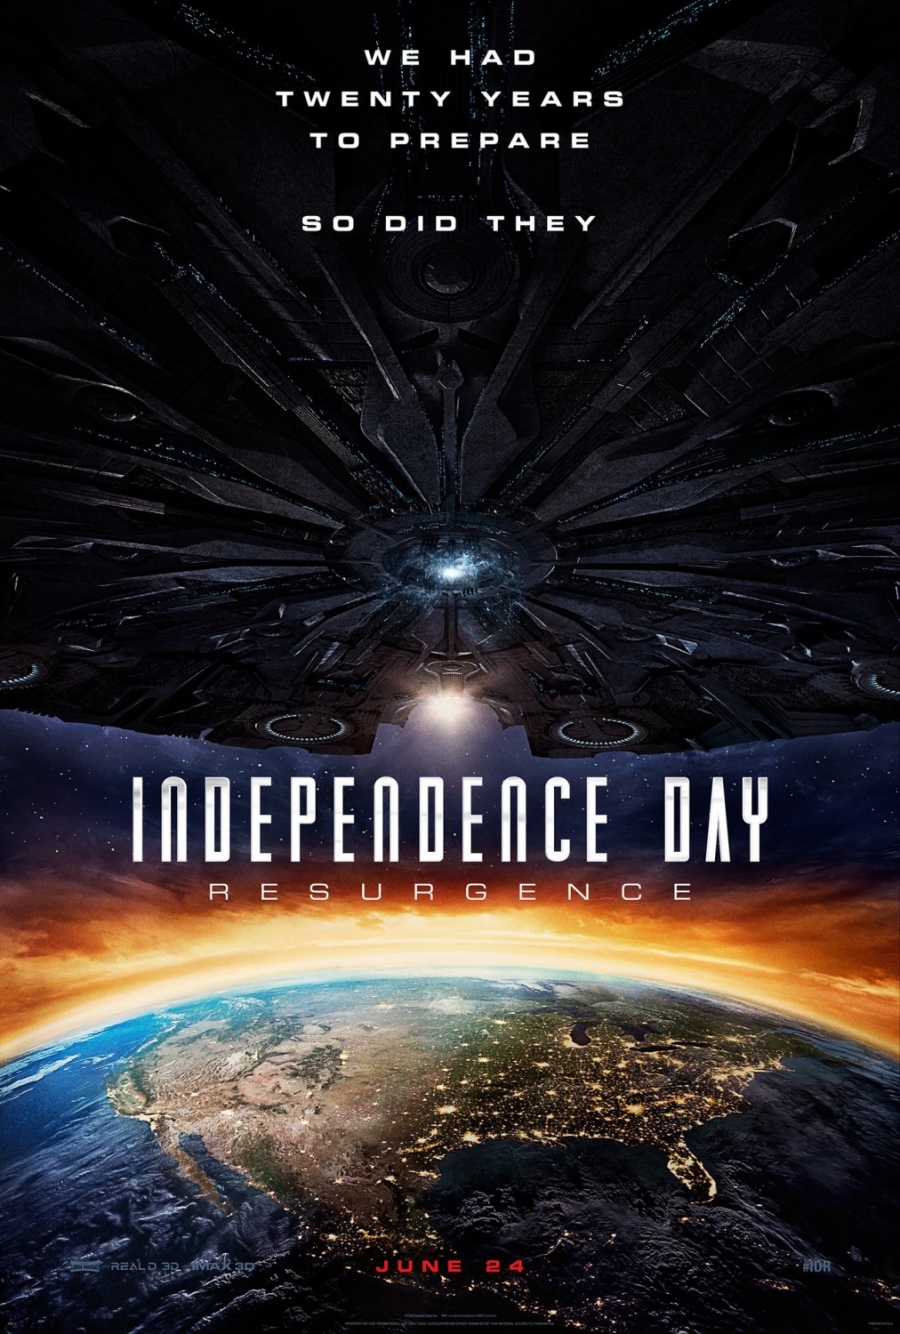 ดูหนังออนไลน์ INDEPENDENCE DAY 2 RESURGENCE (2016) ไอดี 4 สงครามใหม่วันบดโลก